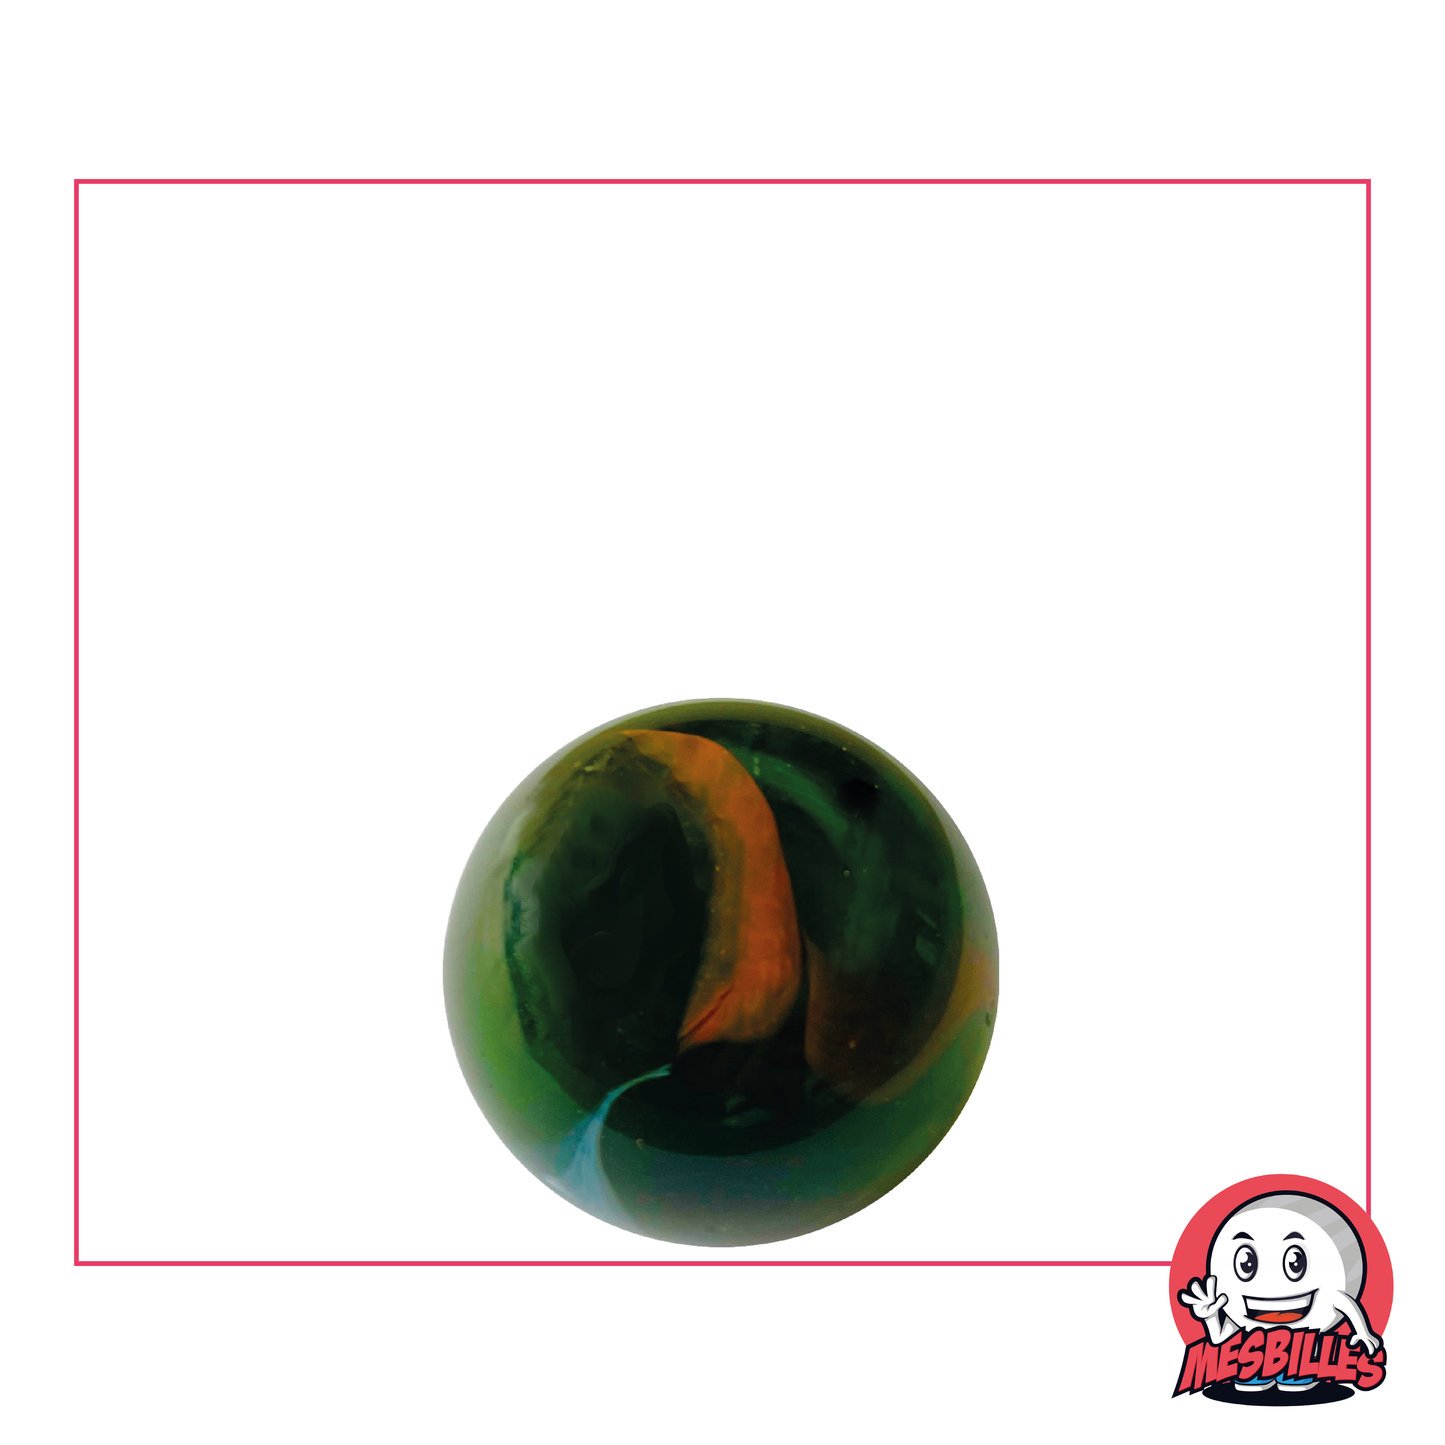 1 Bille Croco de 16 mm, bille en verre translucide de couleur Verte avec du blanc et orange opaque